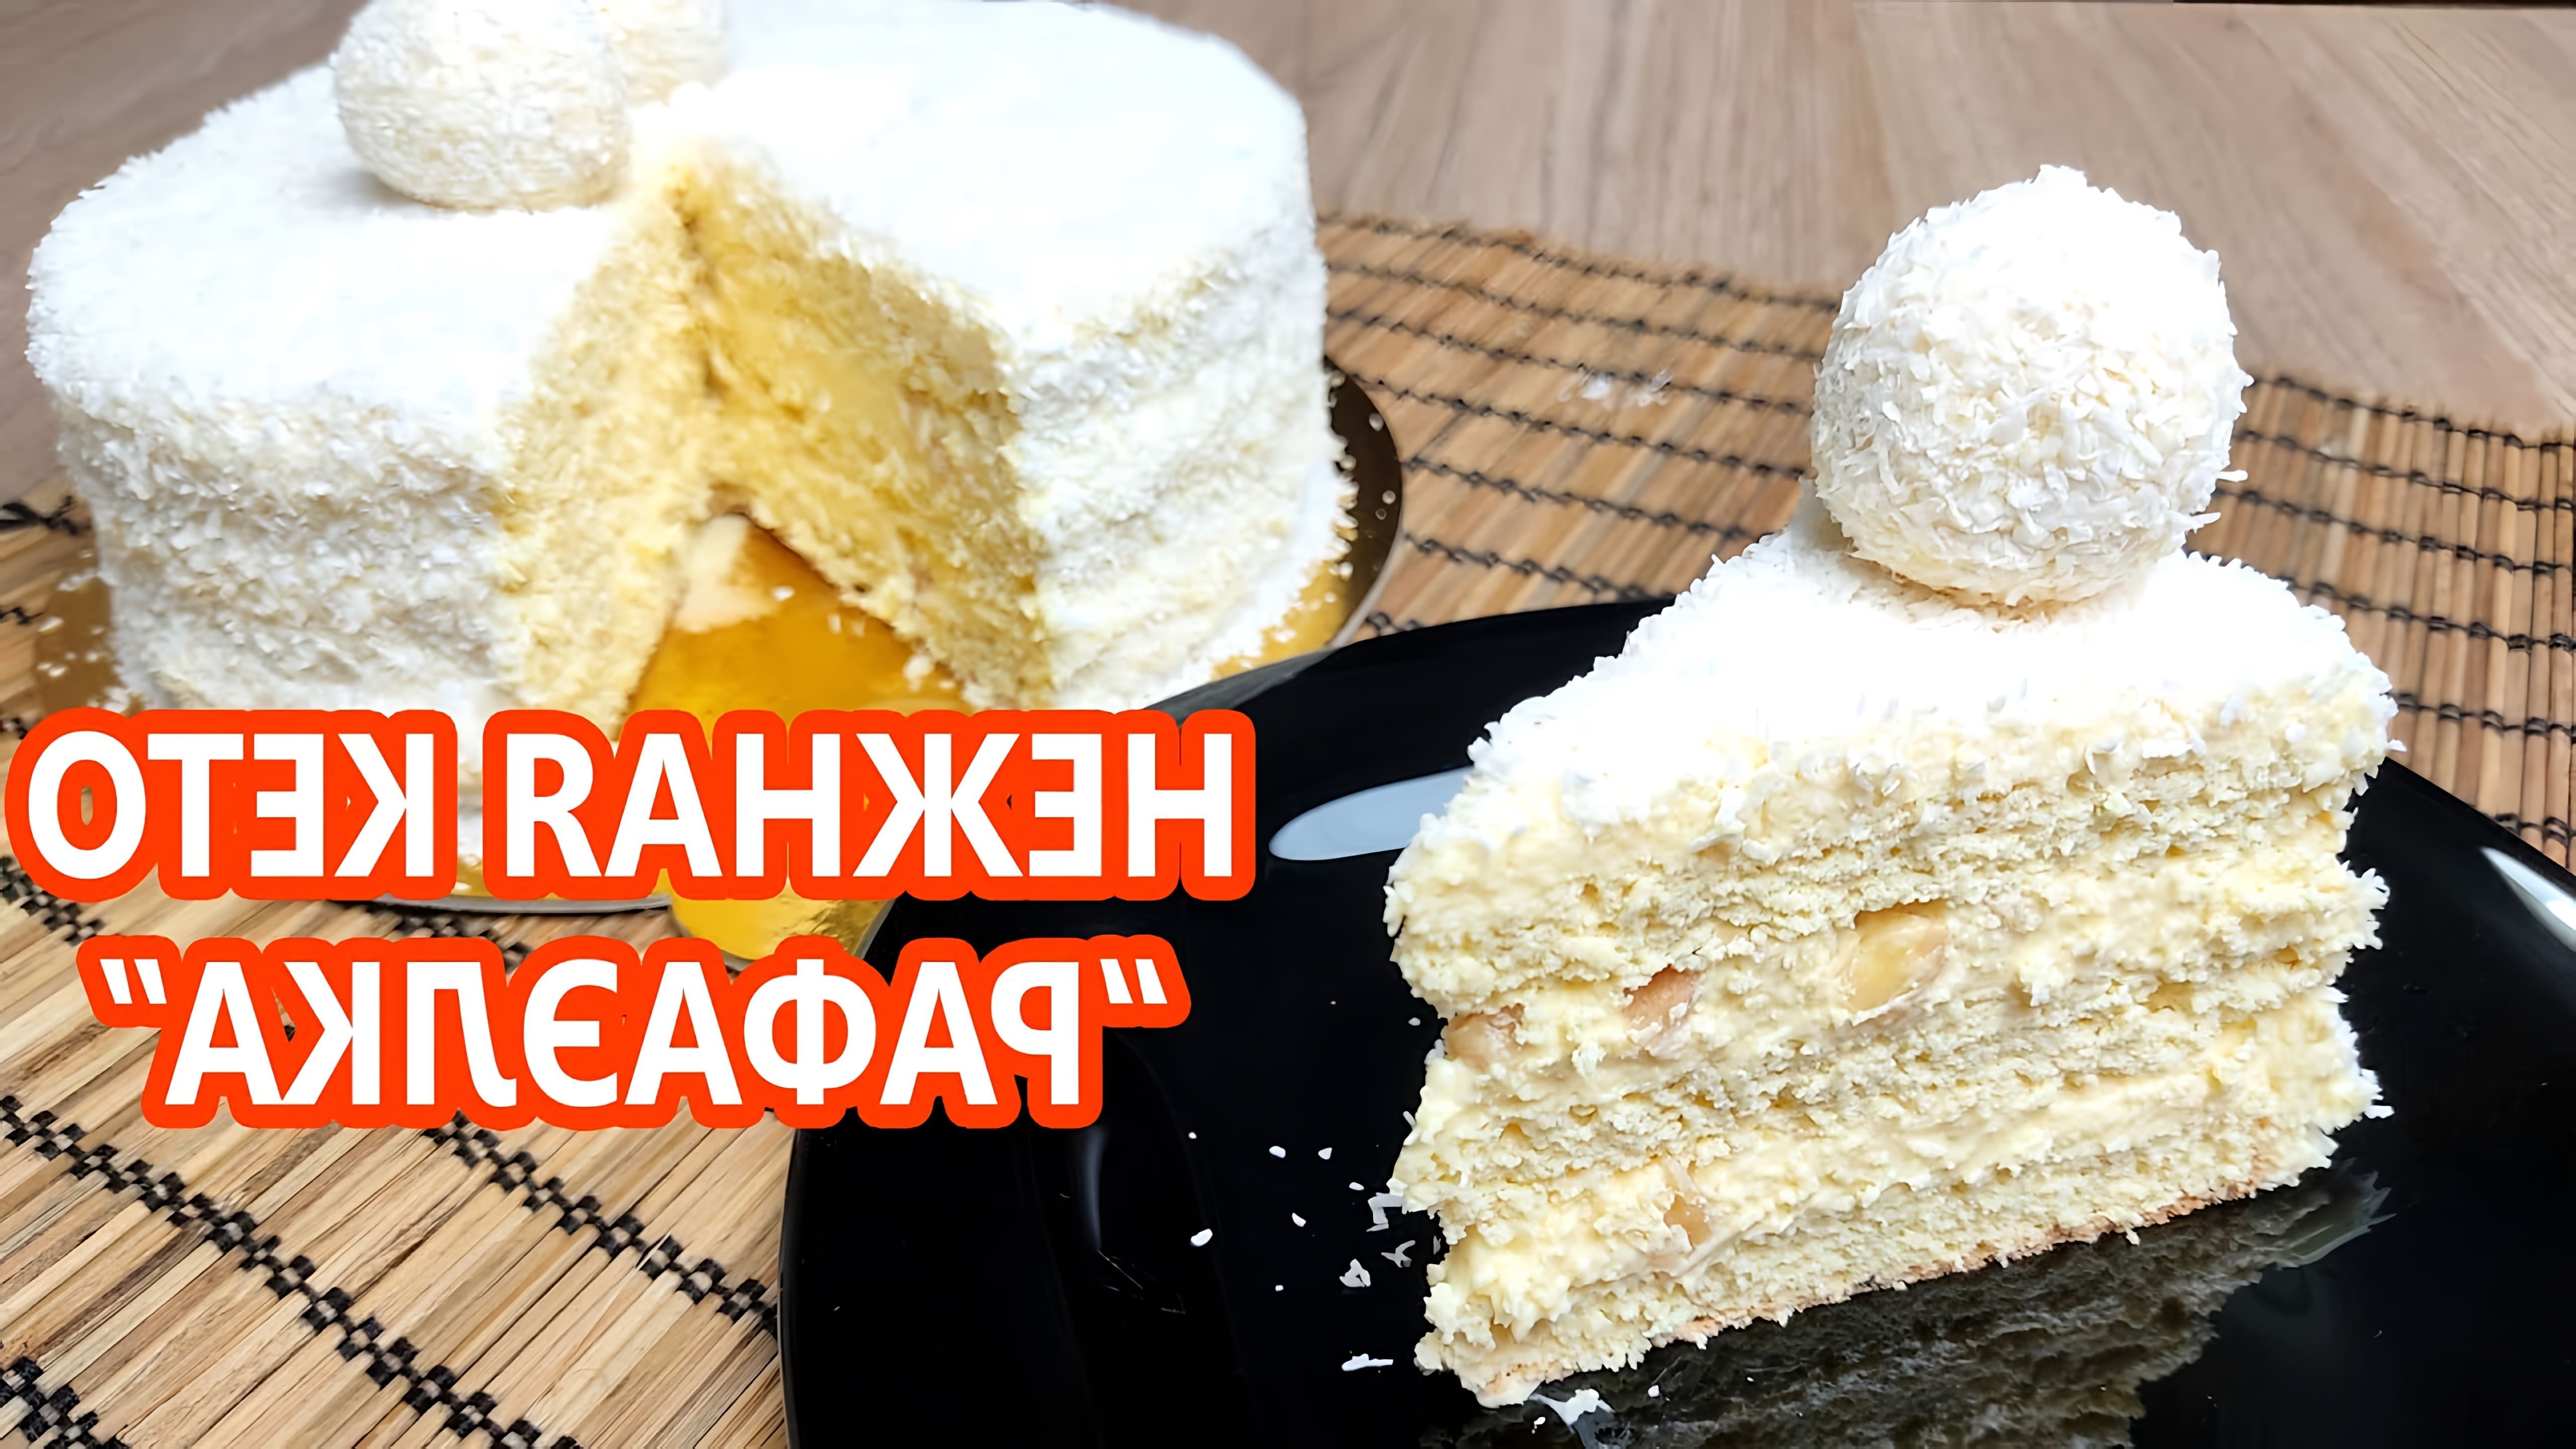 В этом видео демонстрируется рецепт кето торта "Рафаэлло"